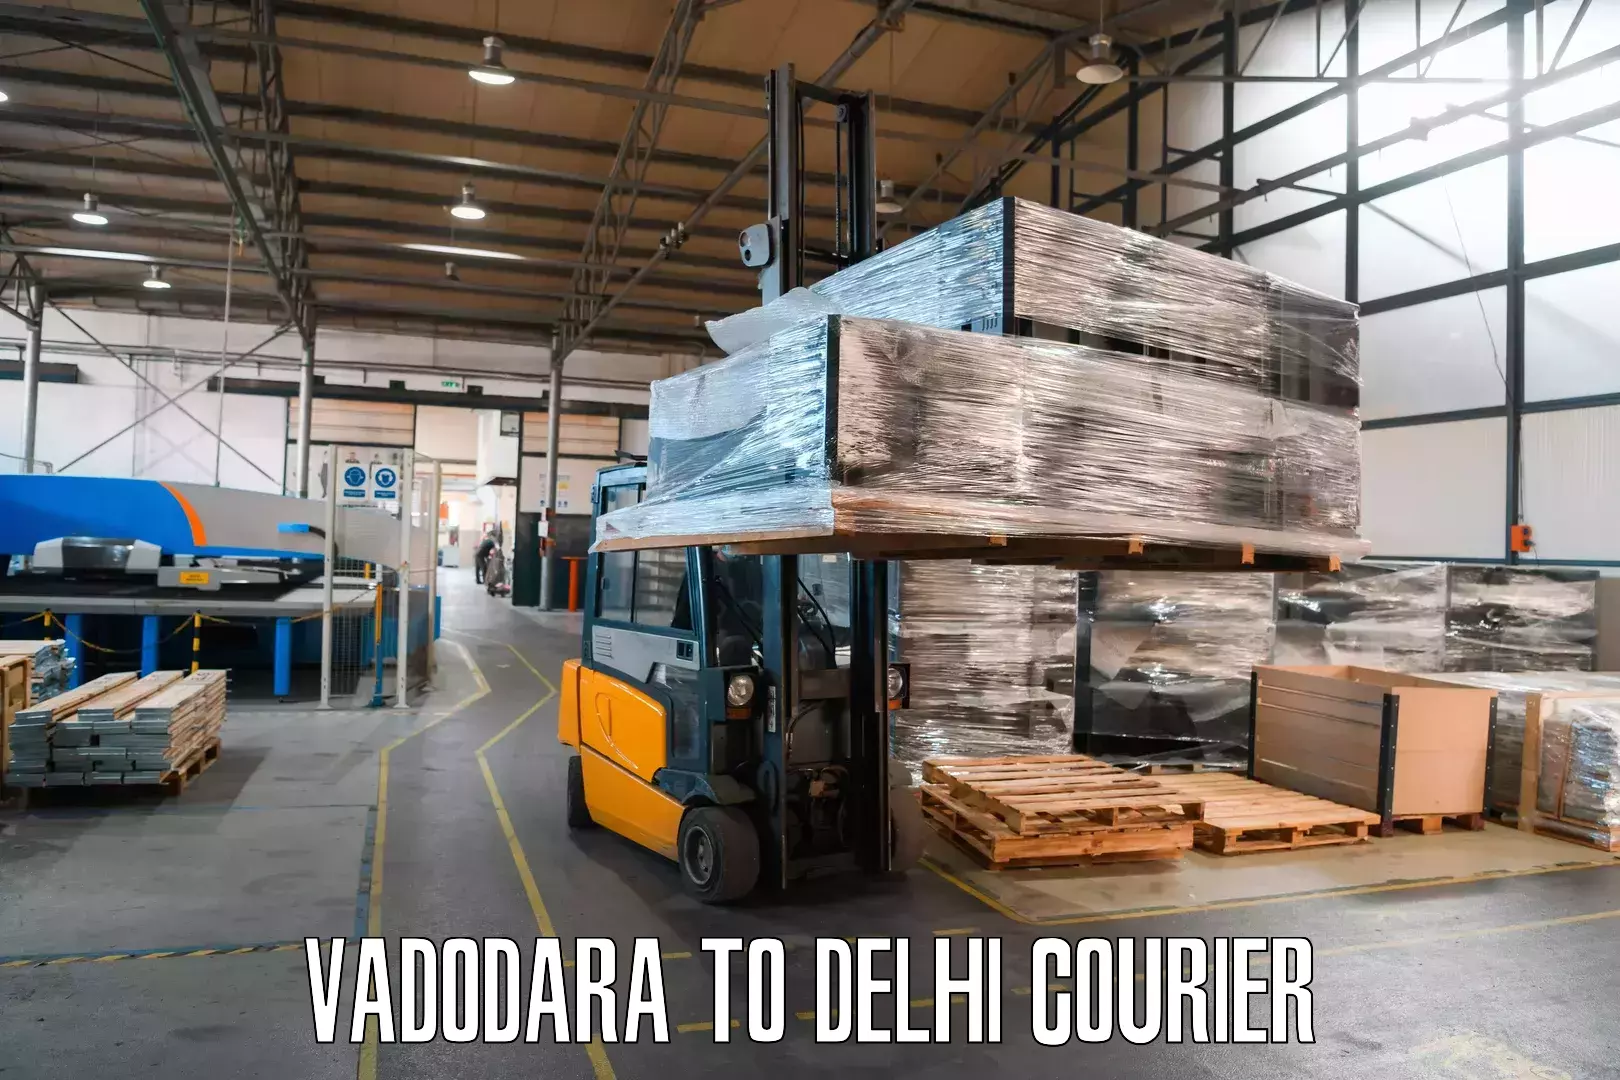 High-priority parcel service Vadodara to Jhilmil